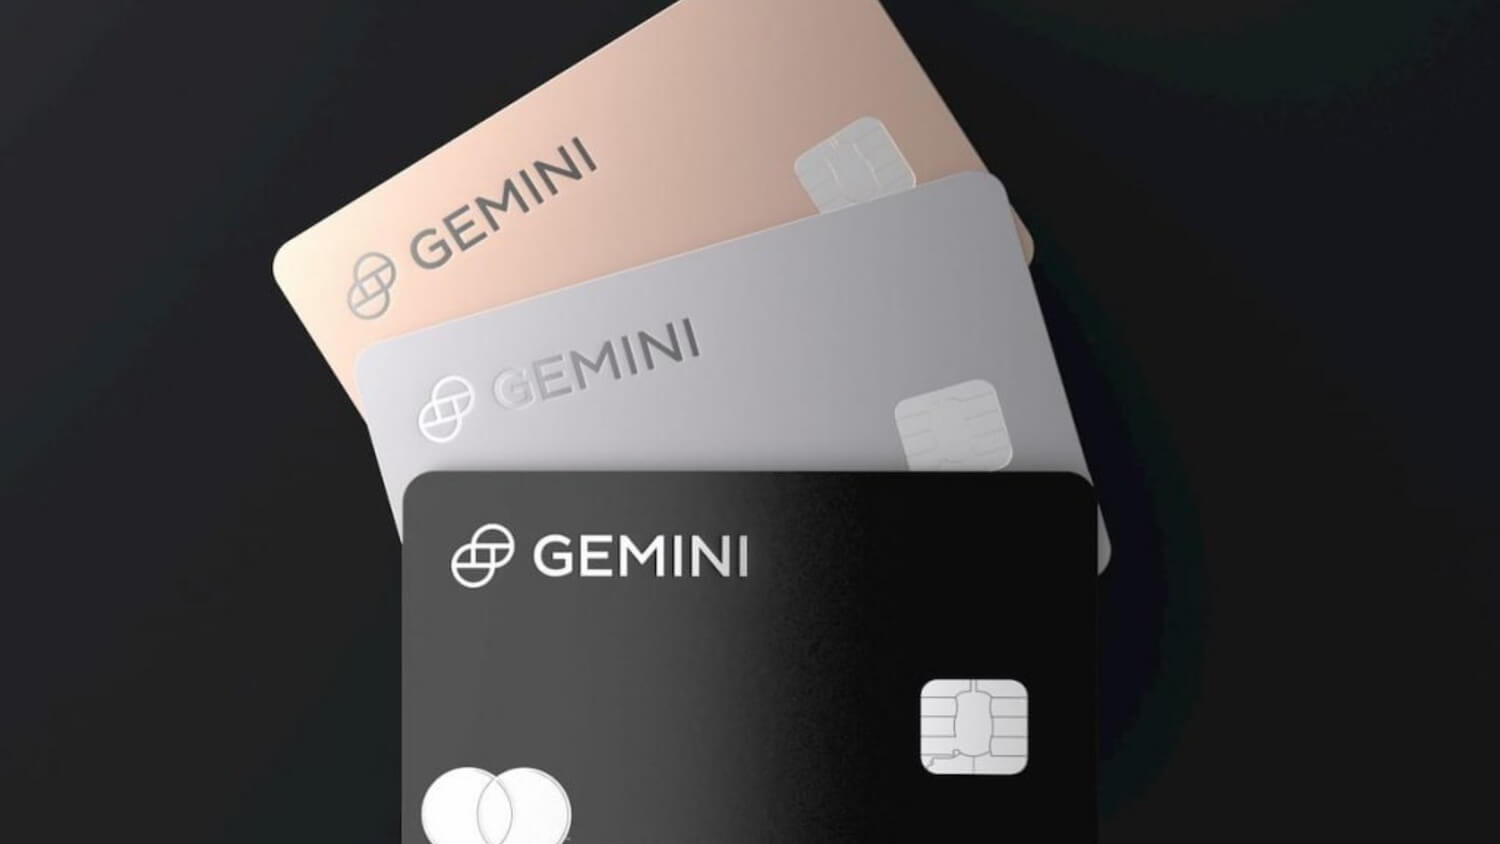 КРИПТОЖМЫХ / Продажа биткоинов компанией Tesla, главный тренд в индустрии блокчейна и криптокарта от Gemini. Биржа Gemini выпустит собственную кредитную карту для кешбэков в криптовалюте. Фото.